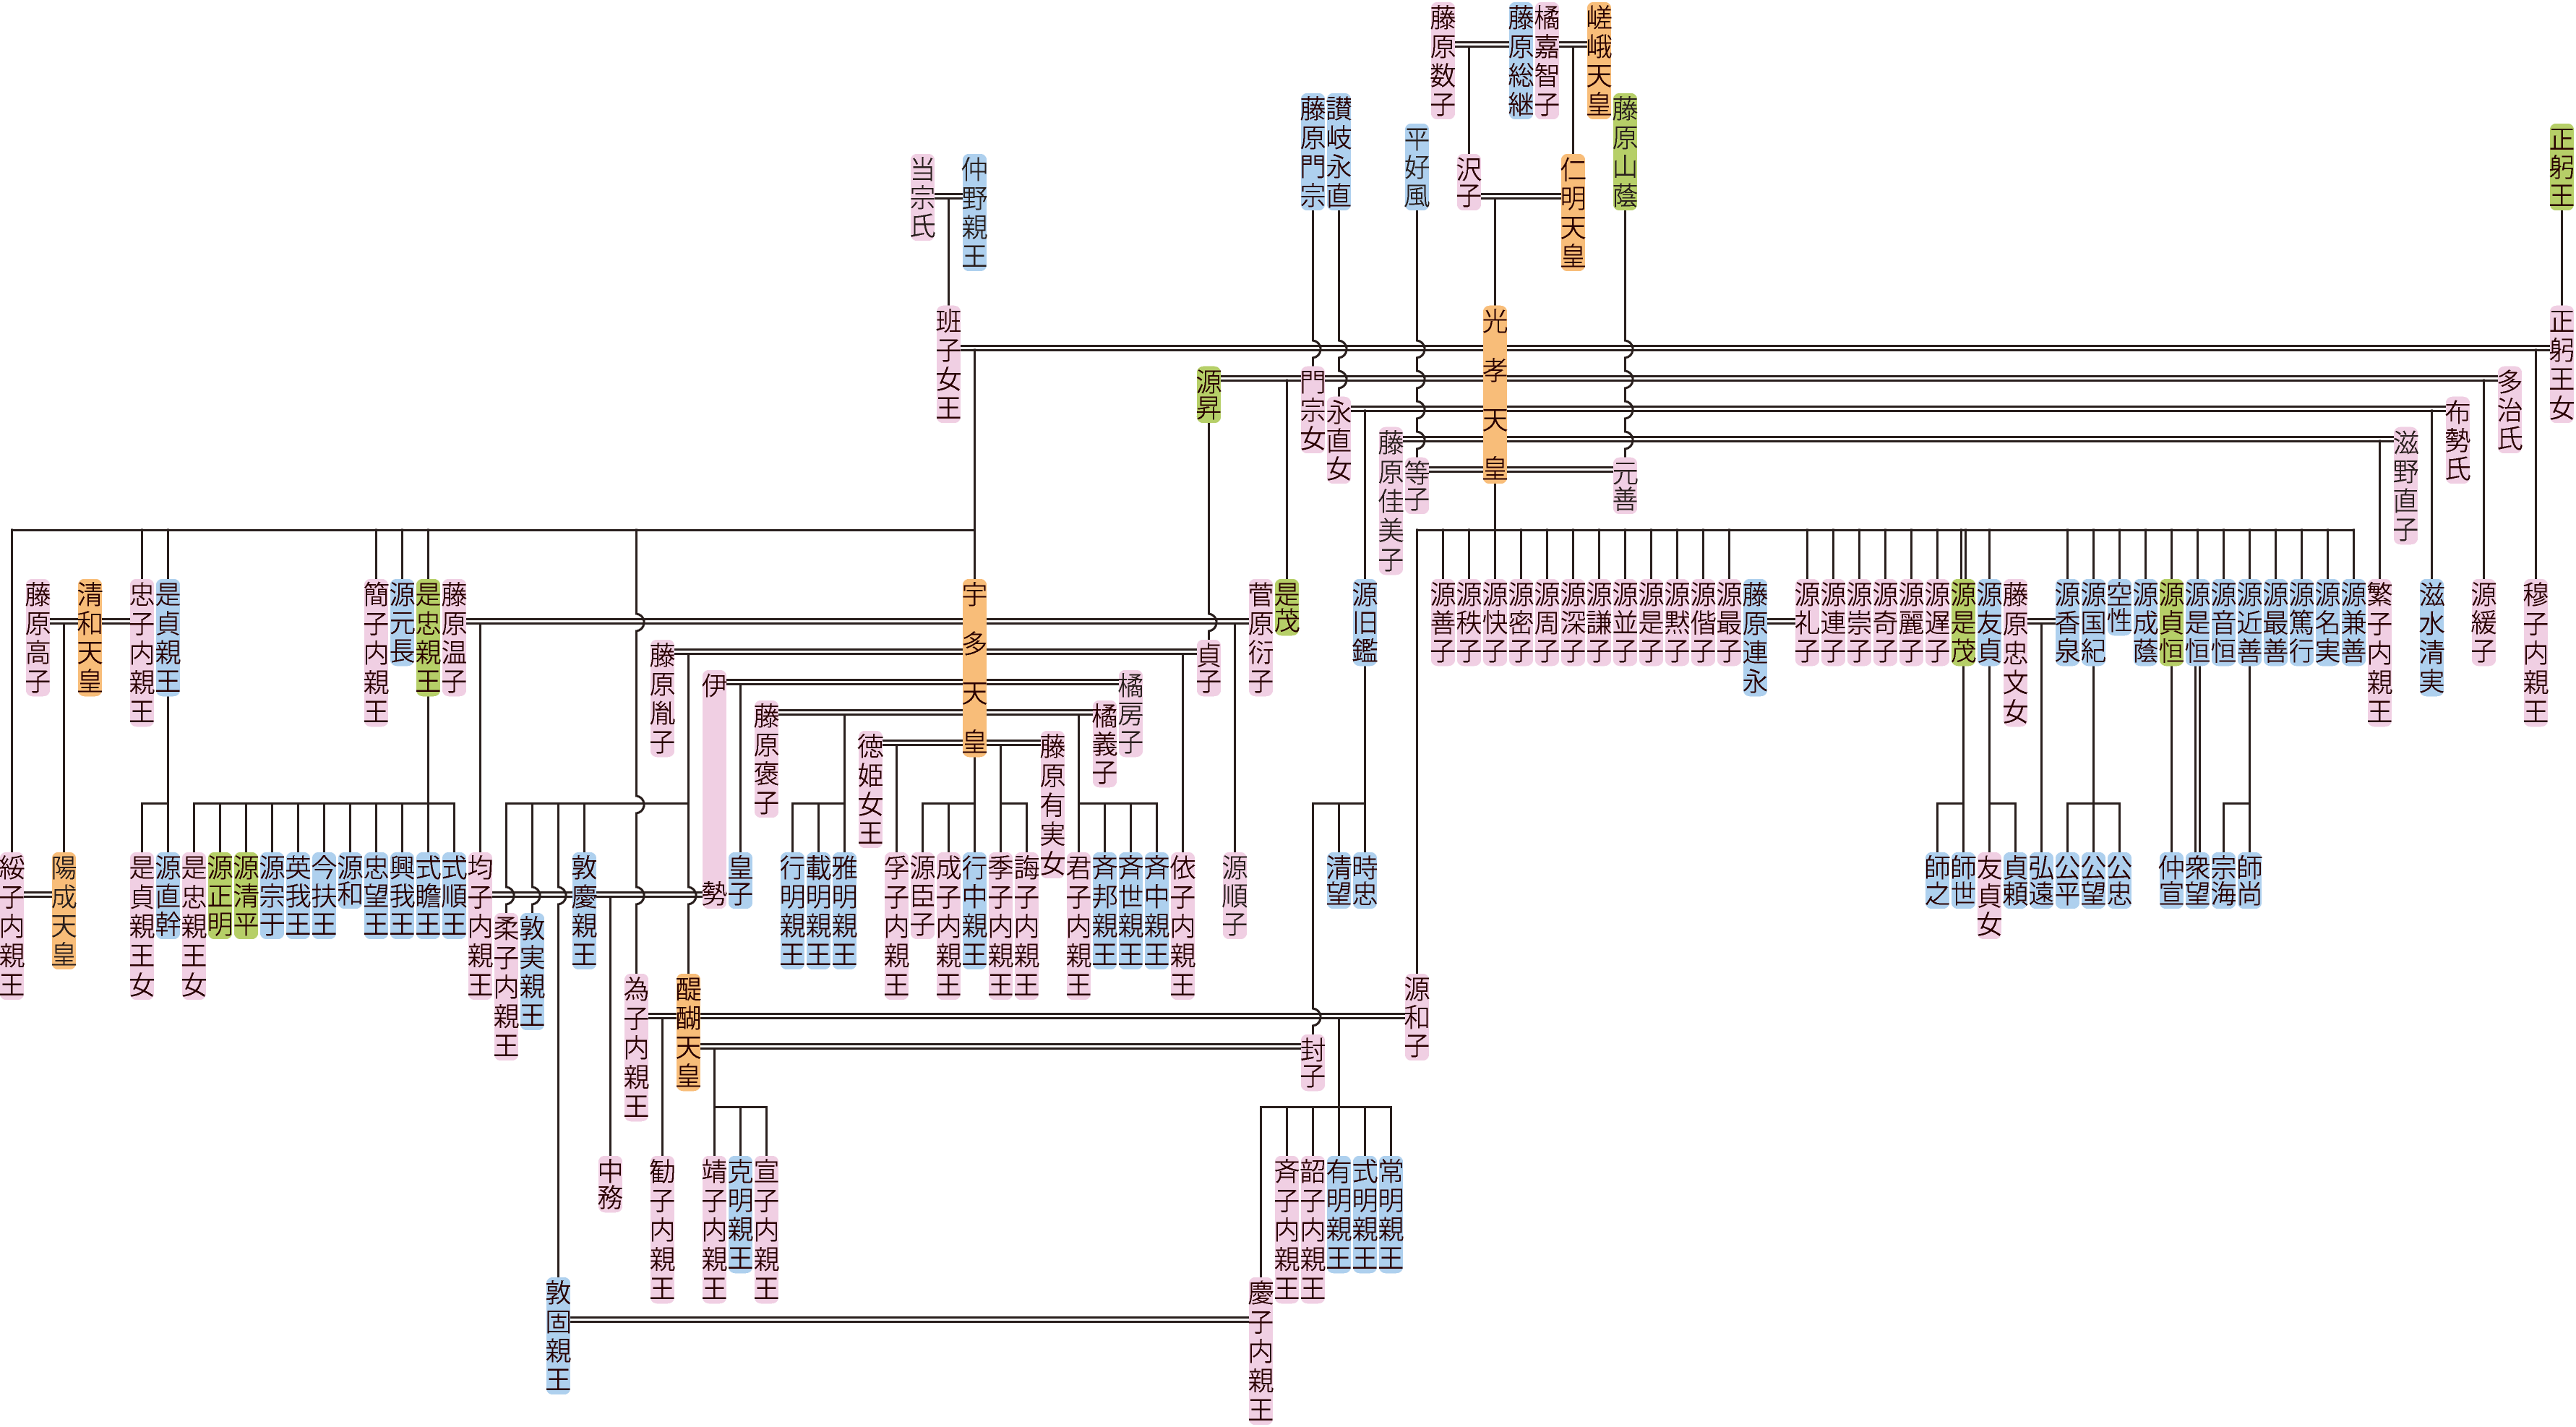 光孝天皇の系図